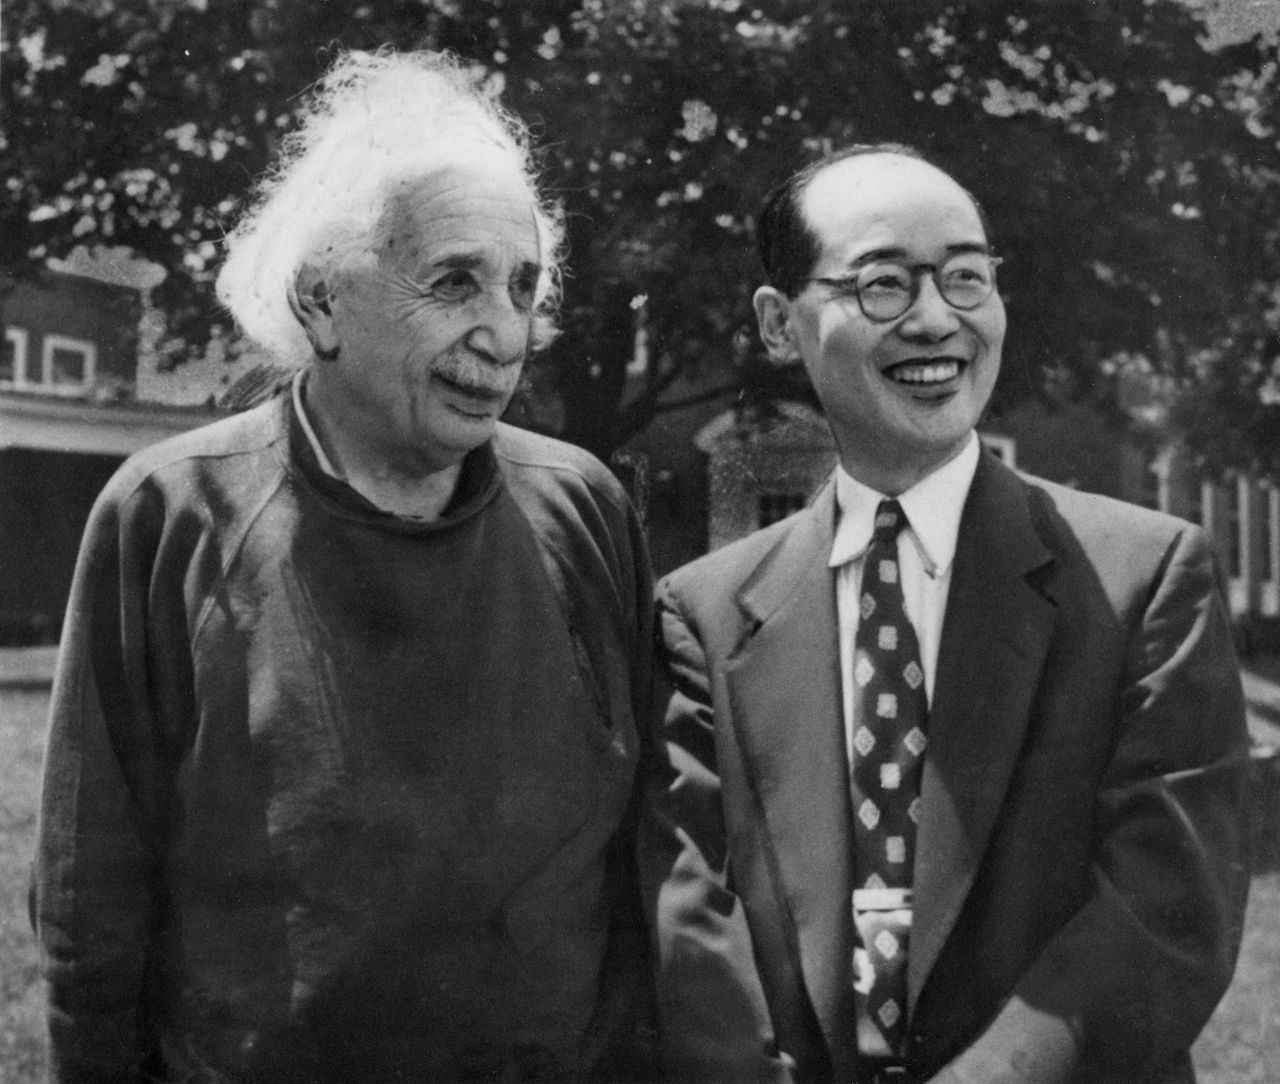 يوكاوا، إلى اليمين، خلال زيارته ألبرت أينشتاين في معهد الدراسات المتقدمة، برينستون، نيو جيرسي، في يونيو/ حزيران 1953 (جريدة ماينيتشي/ أفلو)